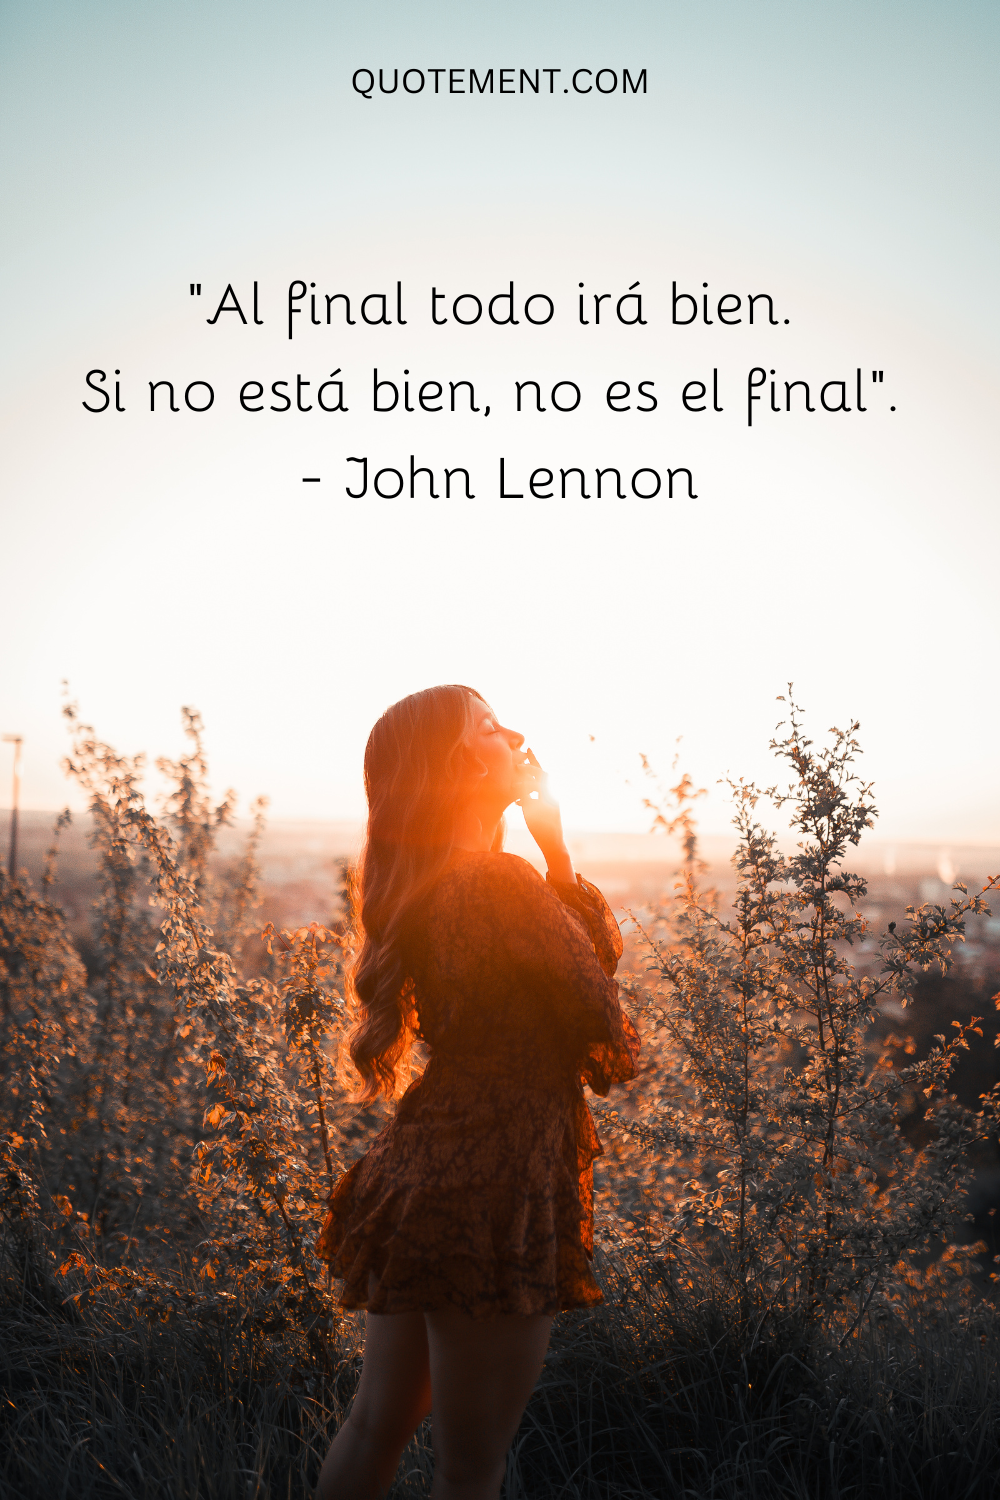 "Al final todo irá bien. Si no está bien, no es el final". - John Lennon